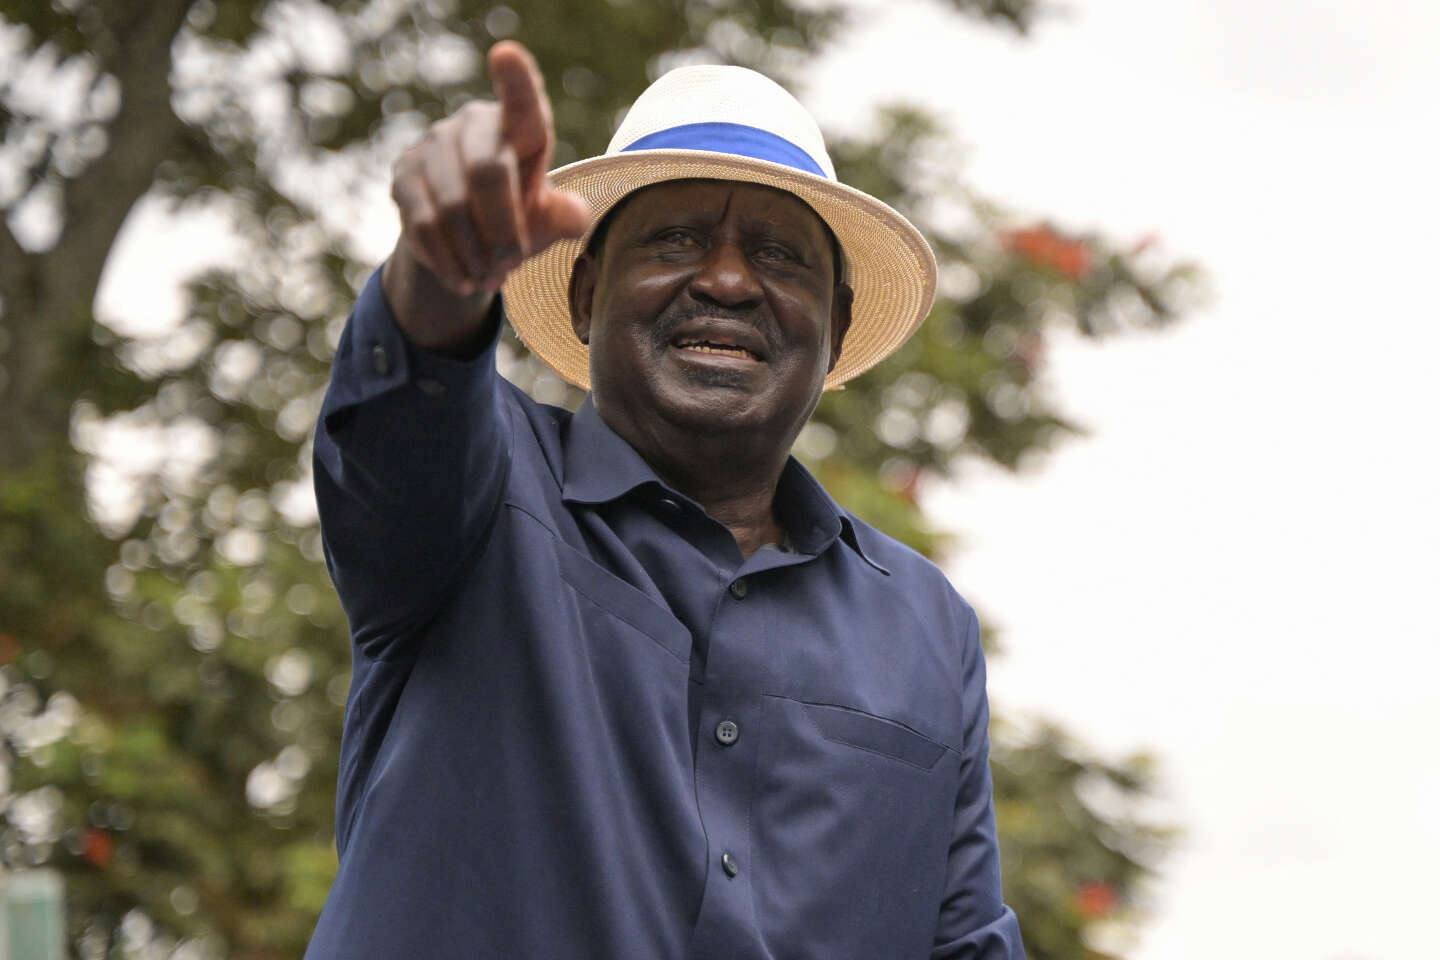 Union africaine : le Kényan Raila Odinga veut conquérir la présidence de la Commission